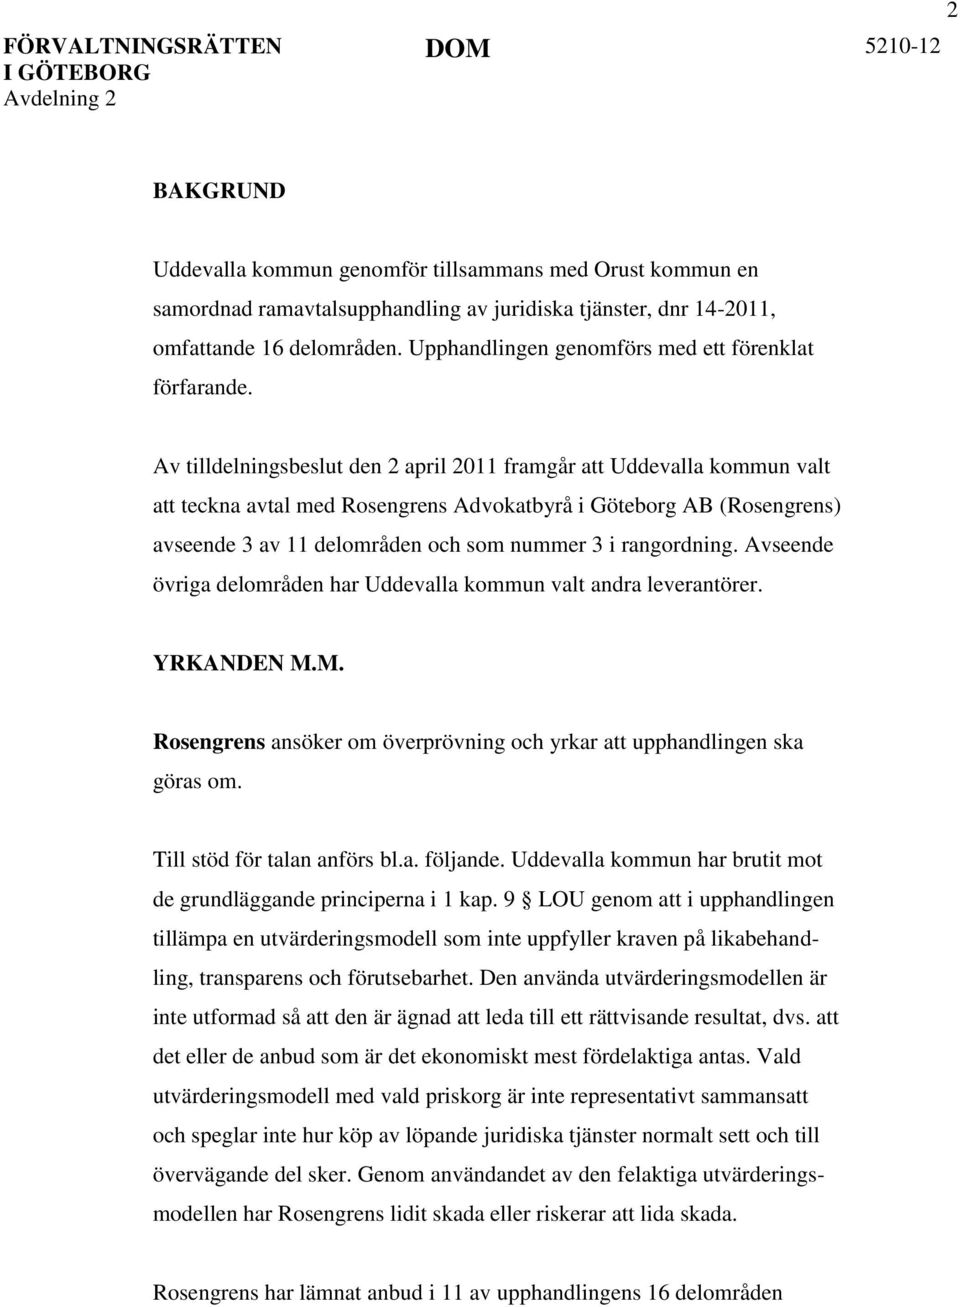 Av tilldelningsbeslut den 2 april 2011 framgår att Uddevalla kommun valt att teckna avtal med Rosengrens Advokatbyrå i Göteborg AB (Rosengrens) avseende 3 av 11 delområden och som nummer 3 i